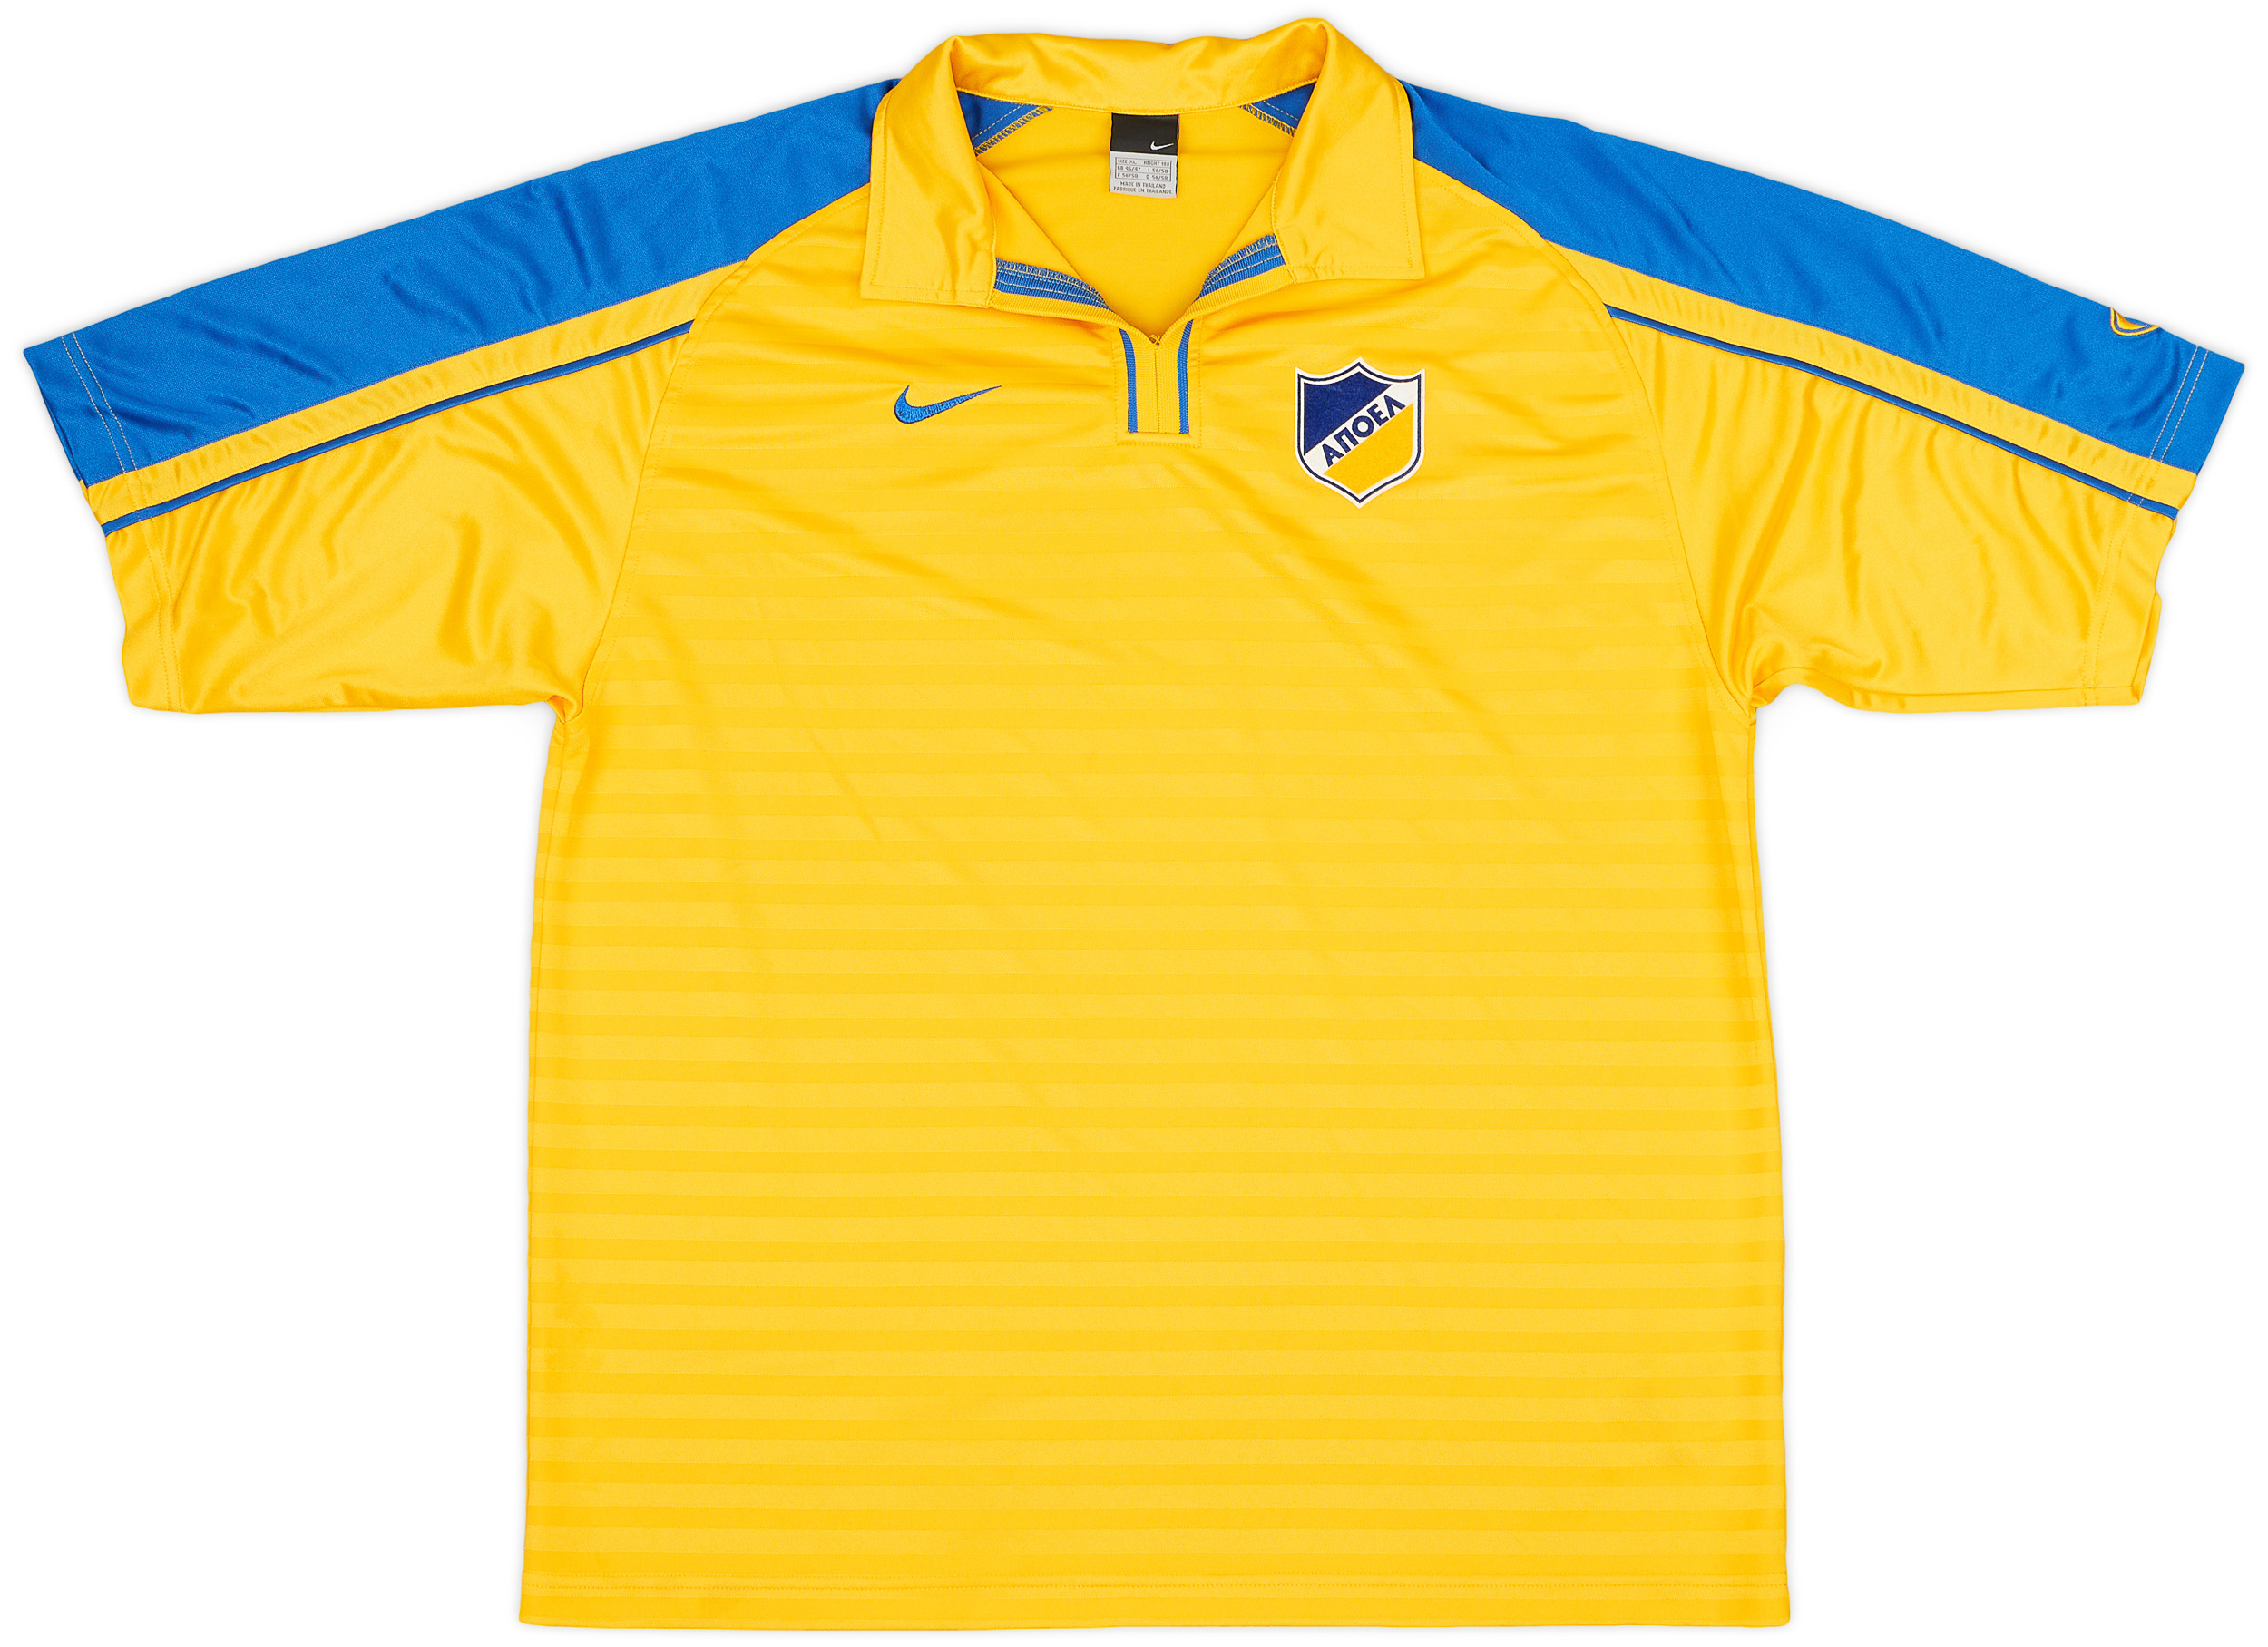 APOEL  home tröja (Original)